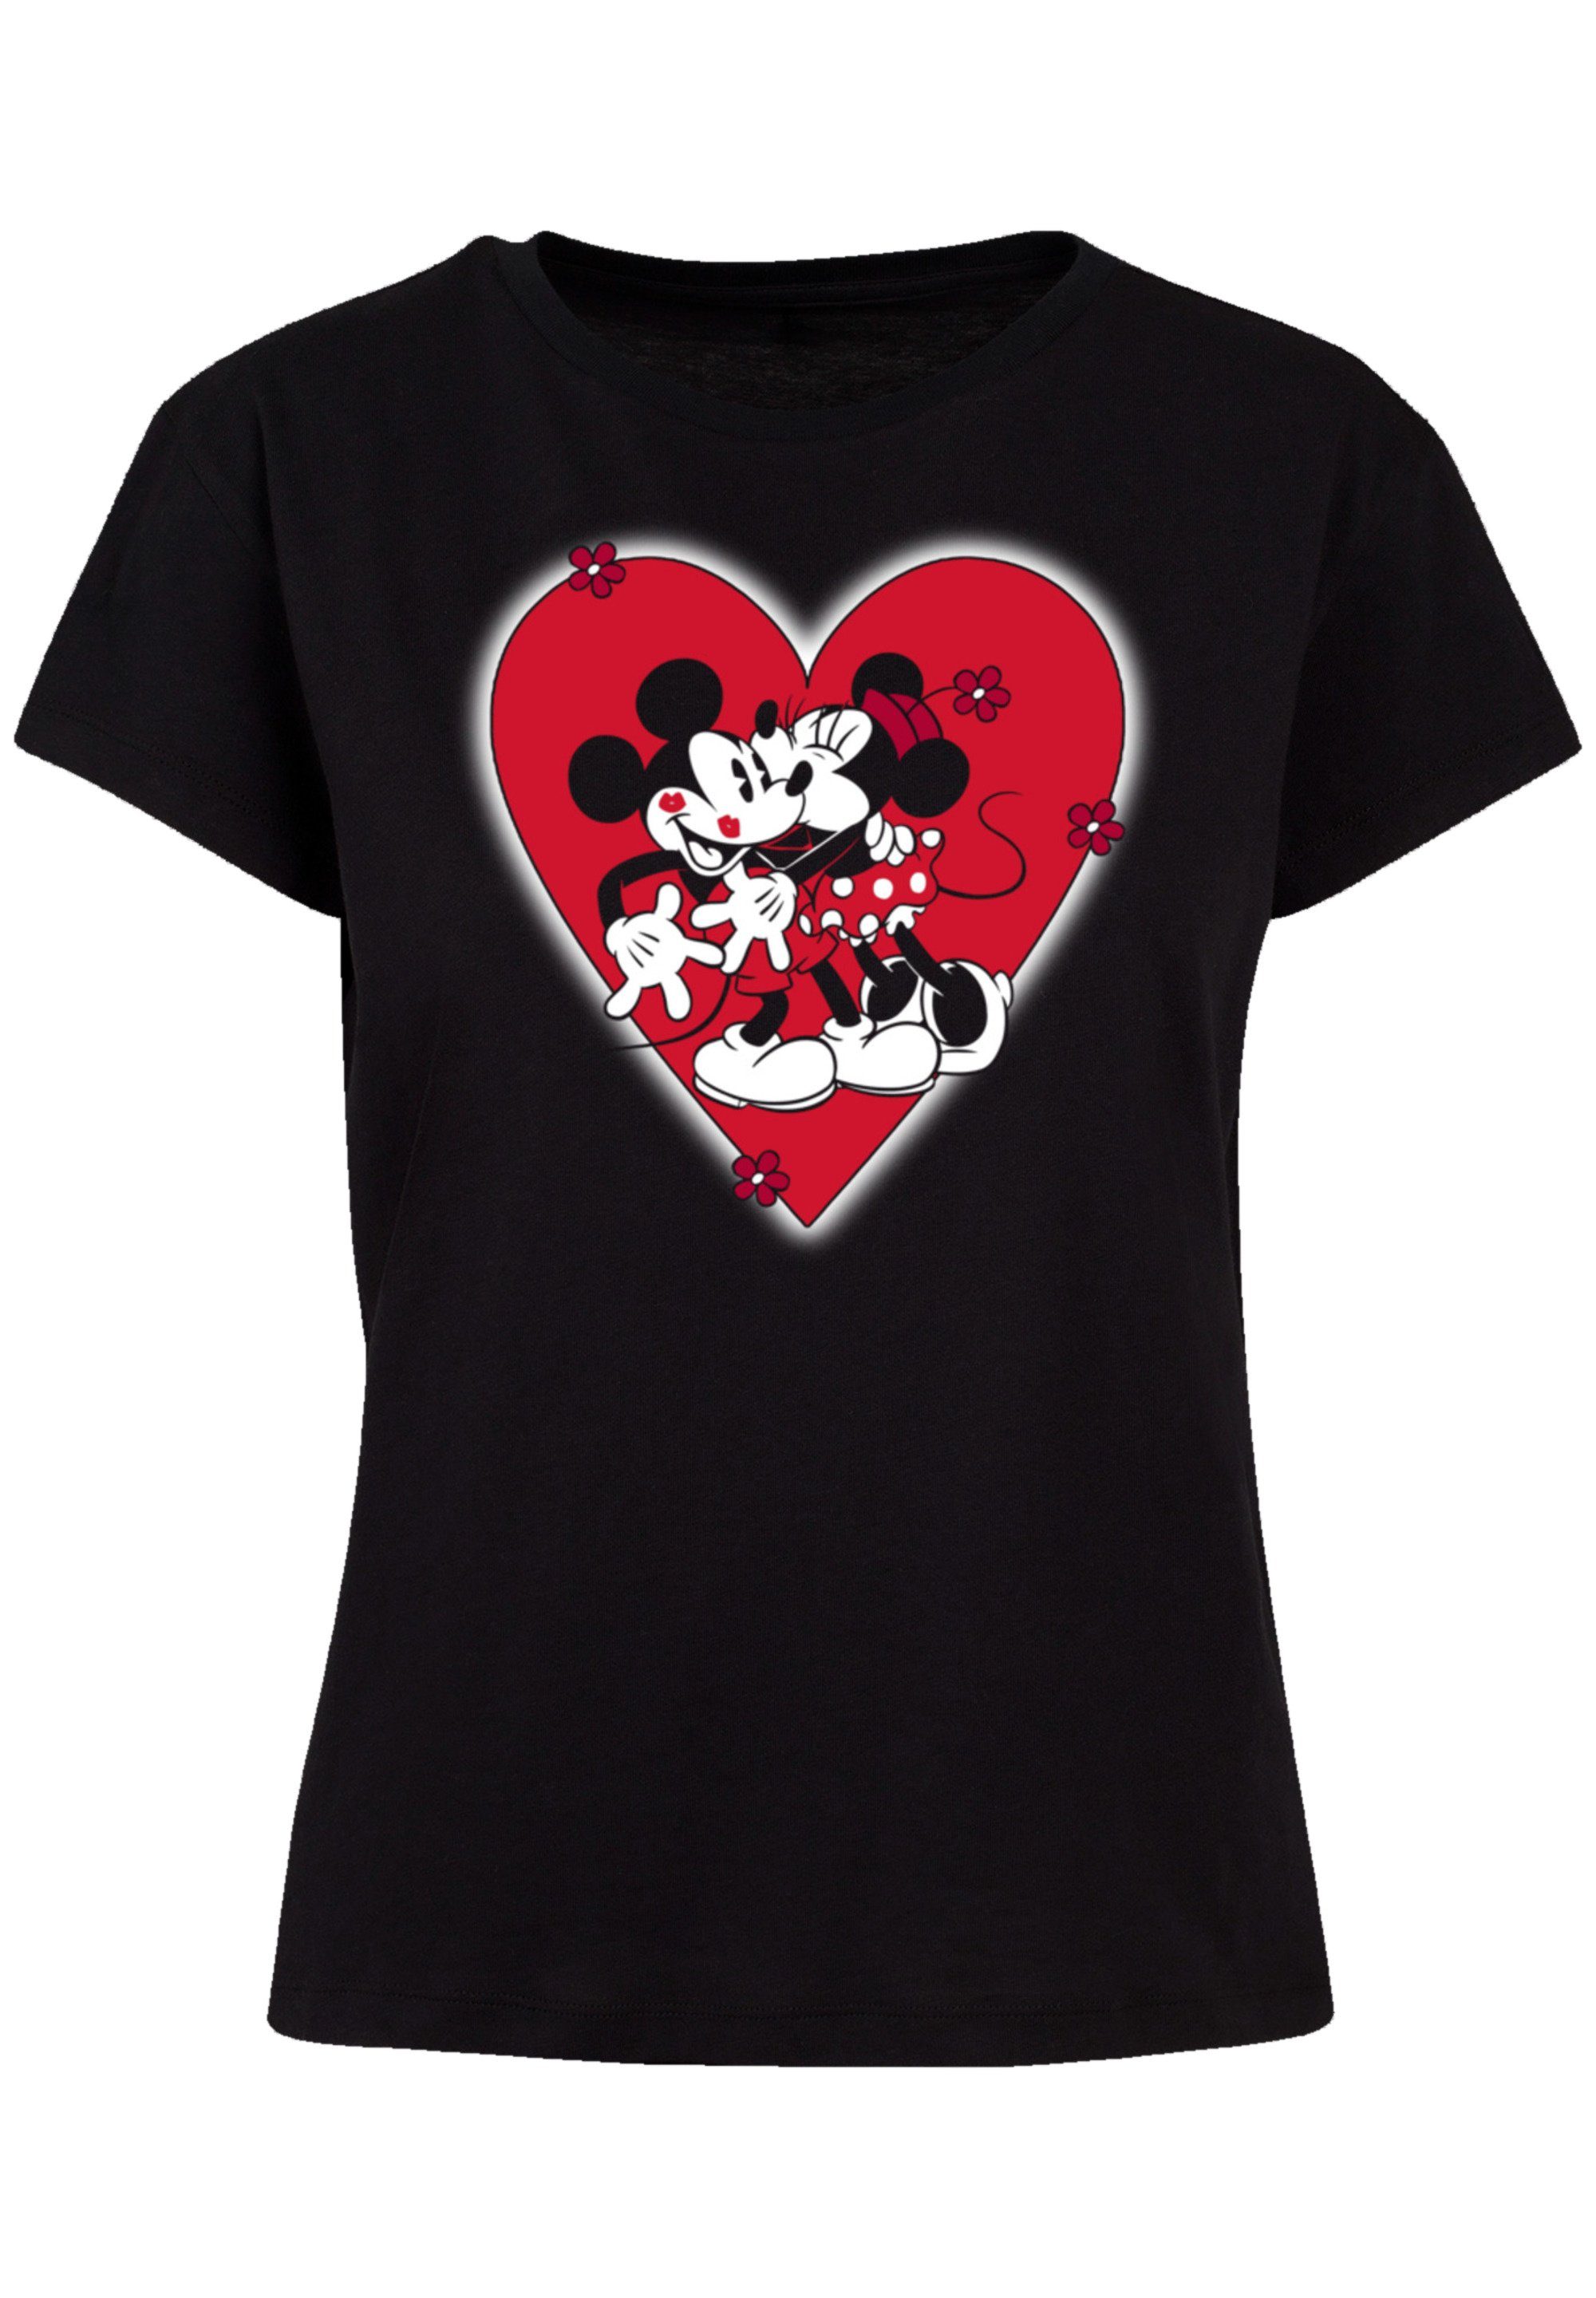 F4NT4STIC T-Shirt Disney Micky Maus Together Premium Qualität, Perfekte  Passform und hochwertige Verarbeitung